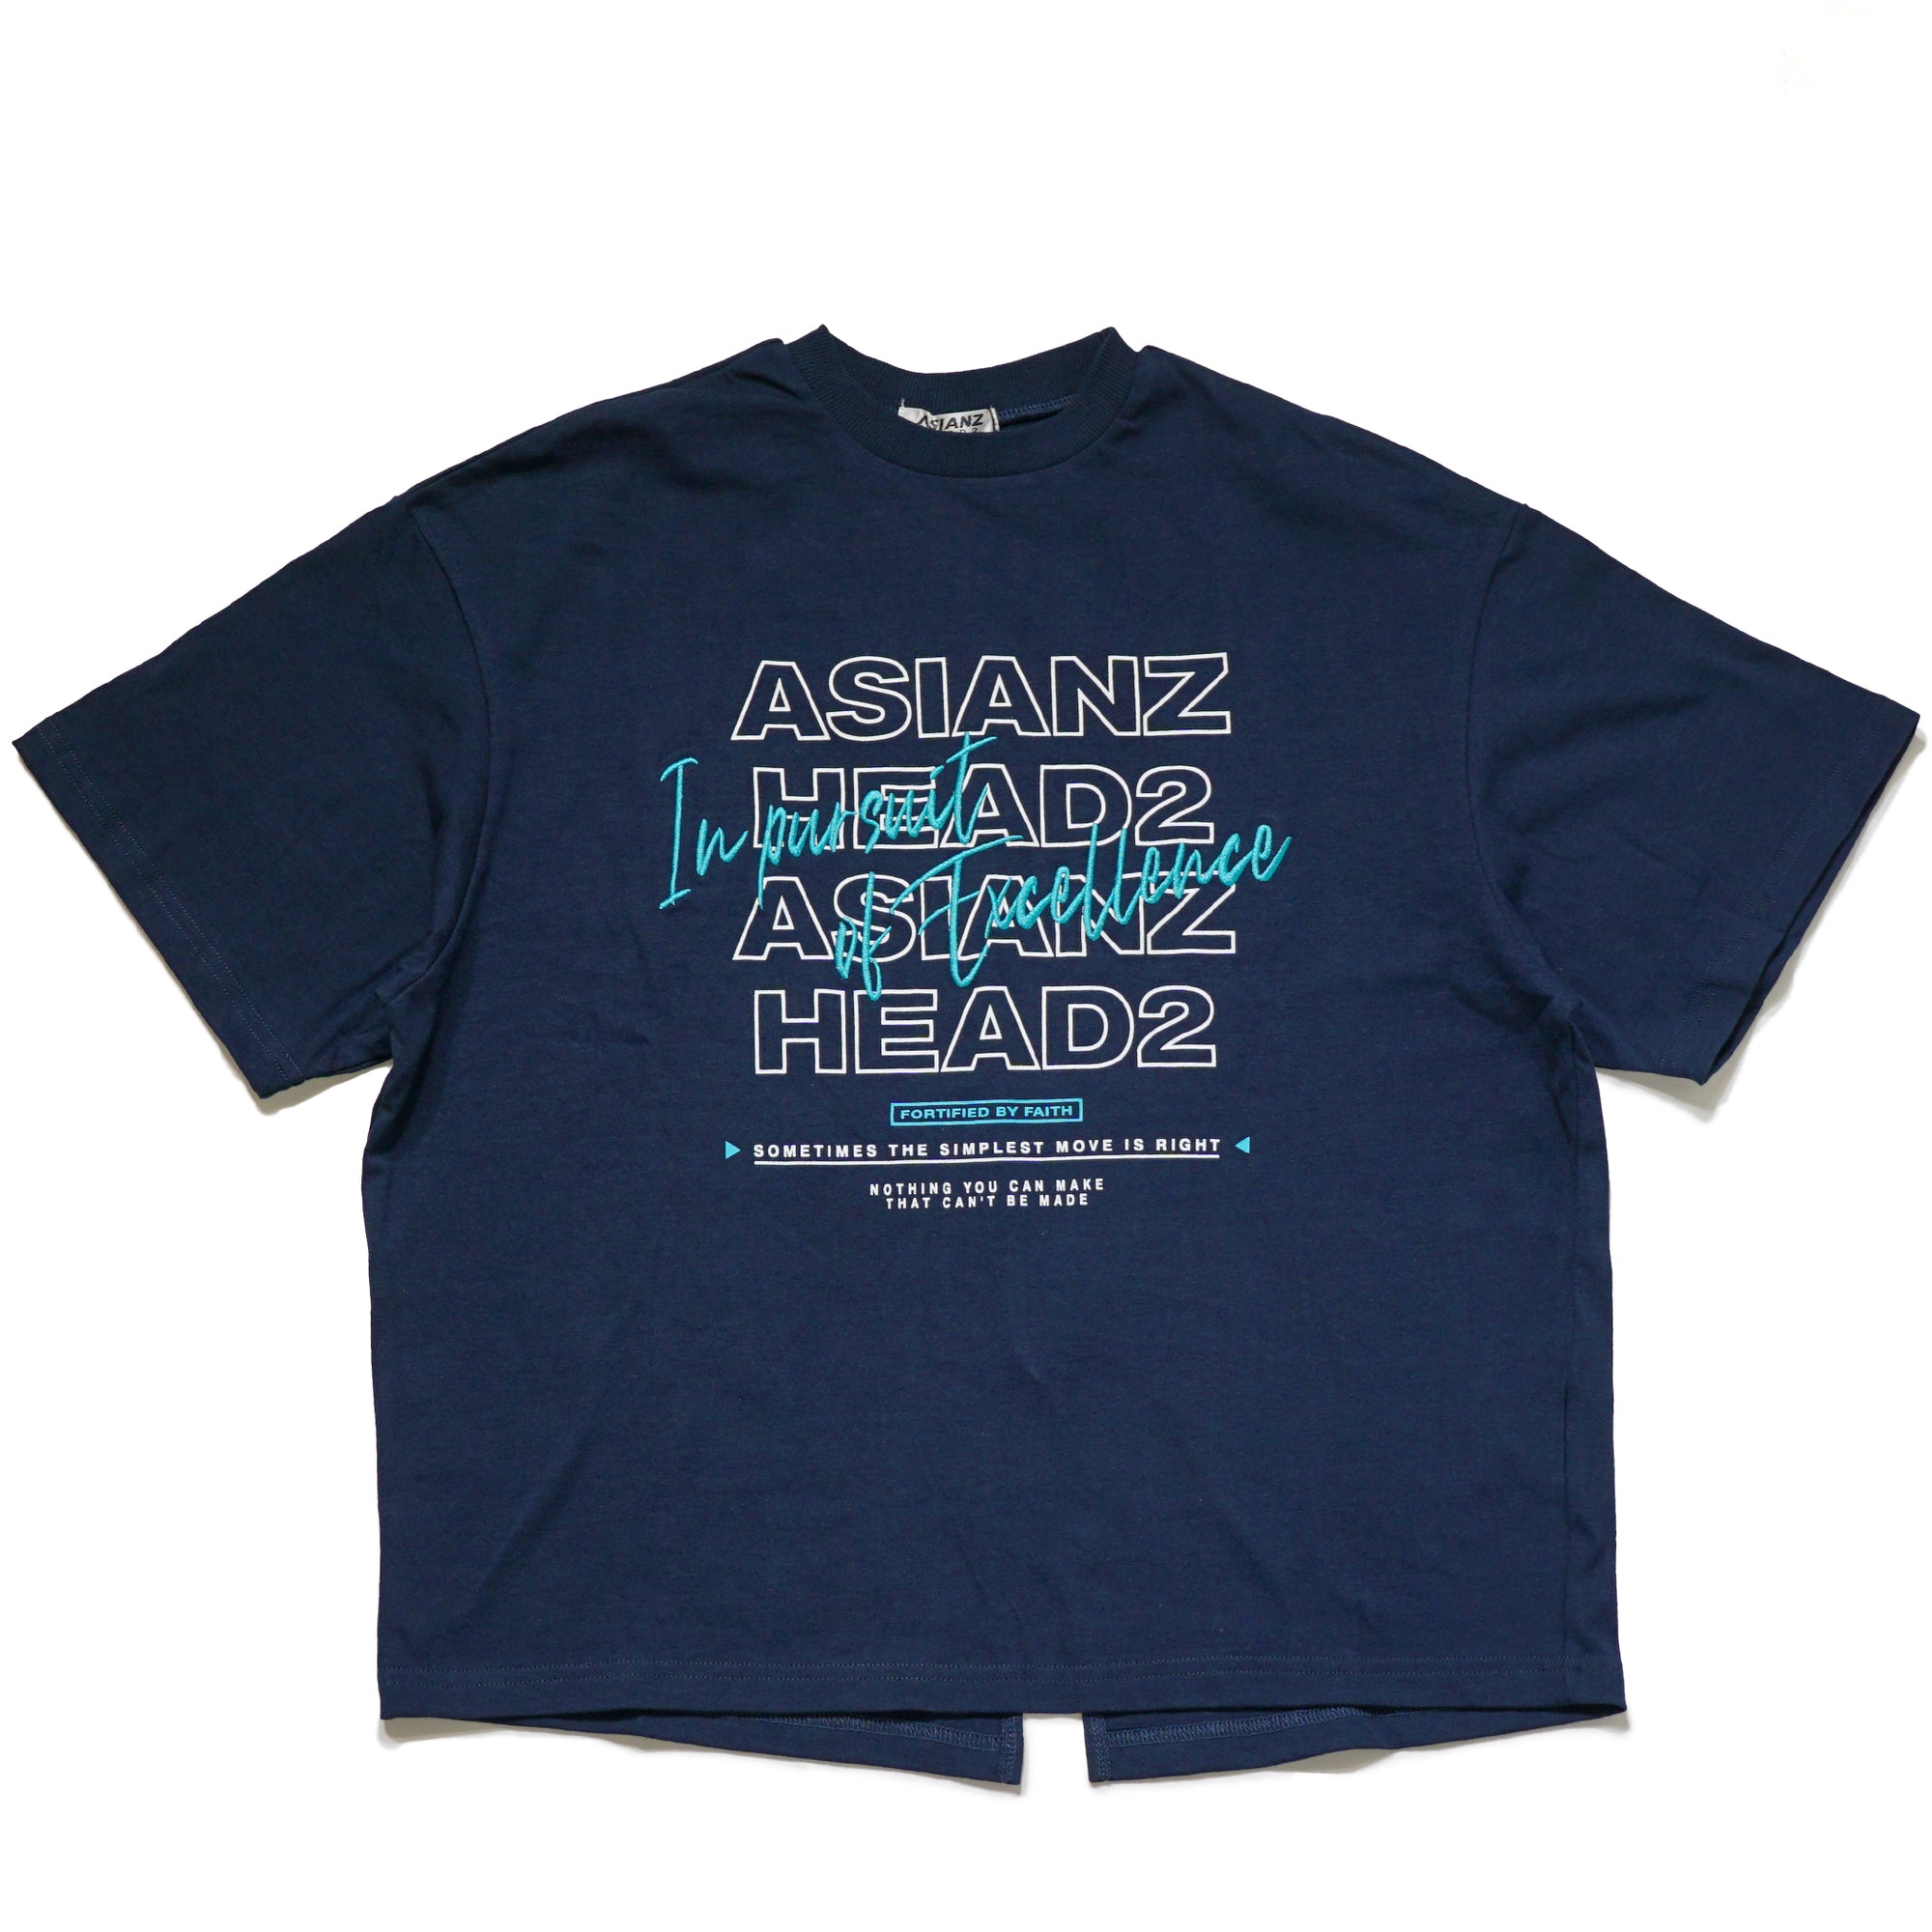 (40%オフ! セール商品)ASIANZ HEAD2 BACKスリット Tシャツ